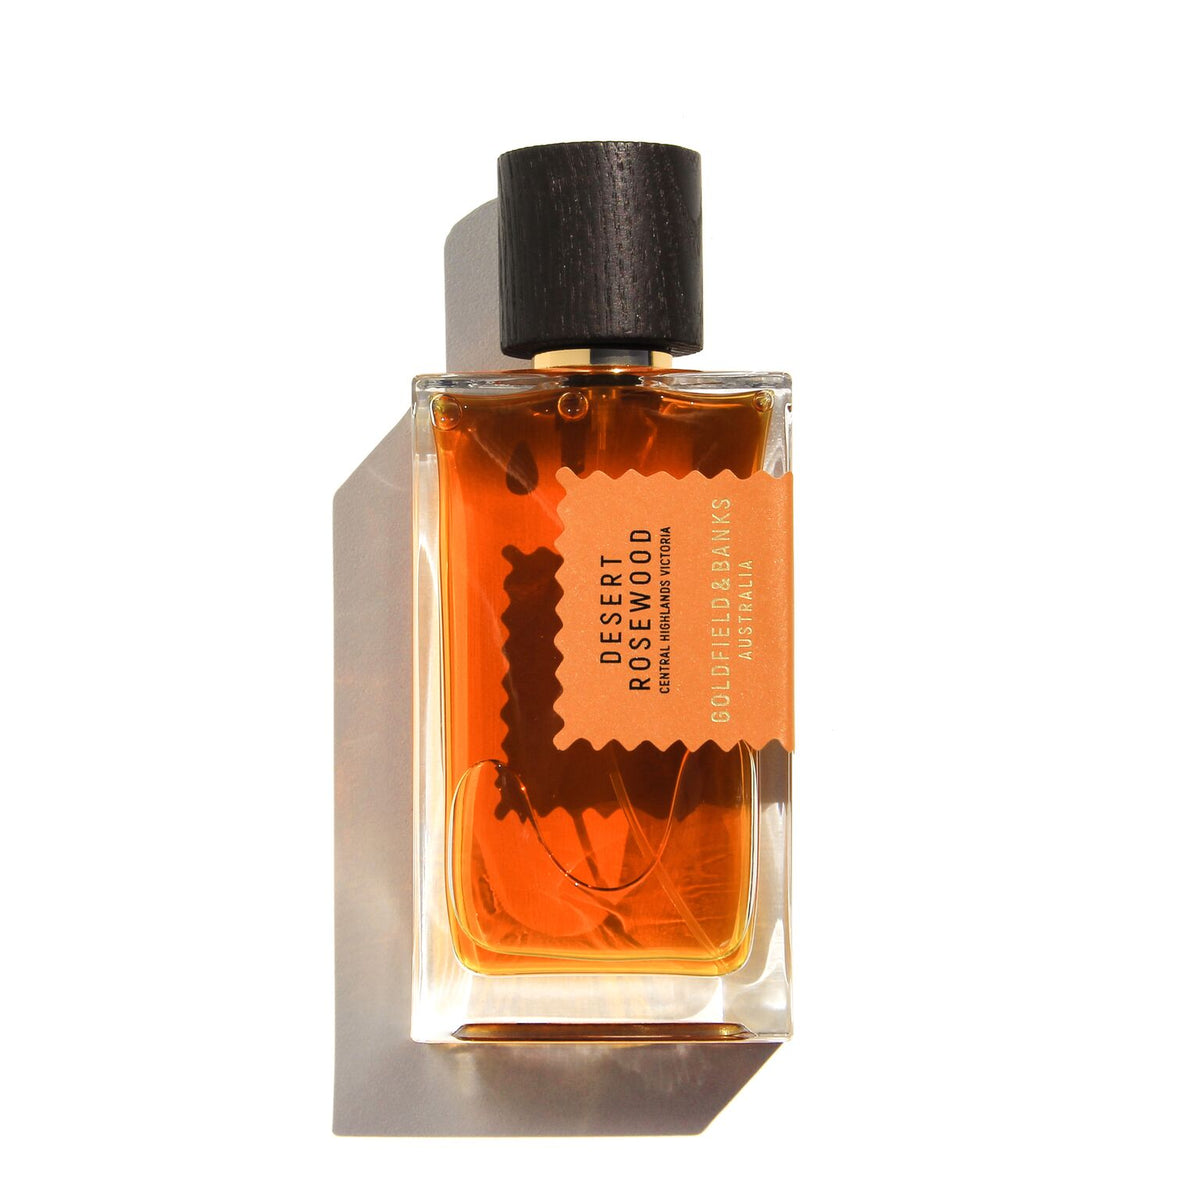 Enigma Bois Noir EDP for Men - 100 ML (3.4 oz) by Art & Parfum